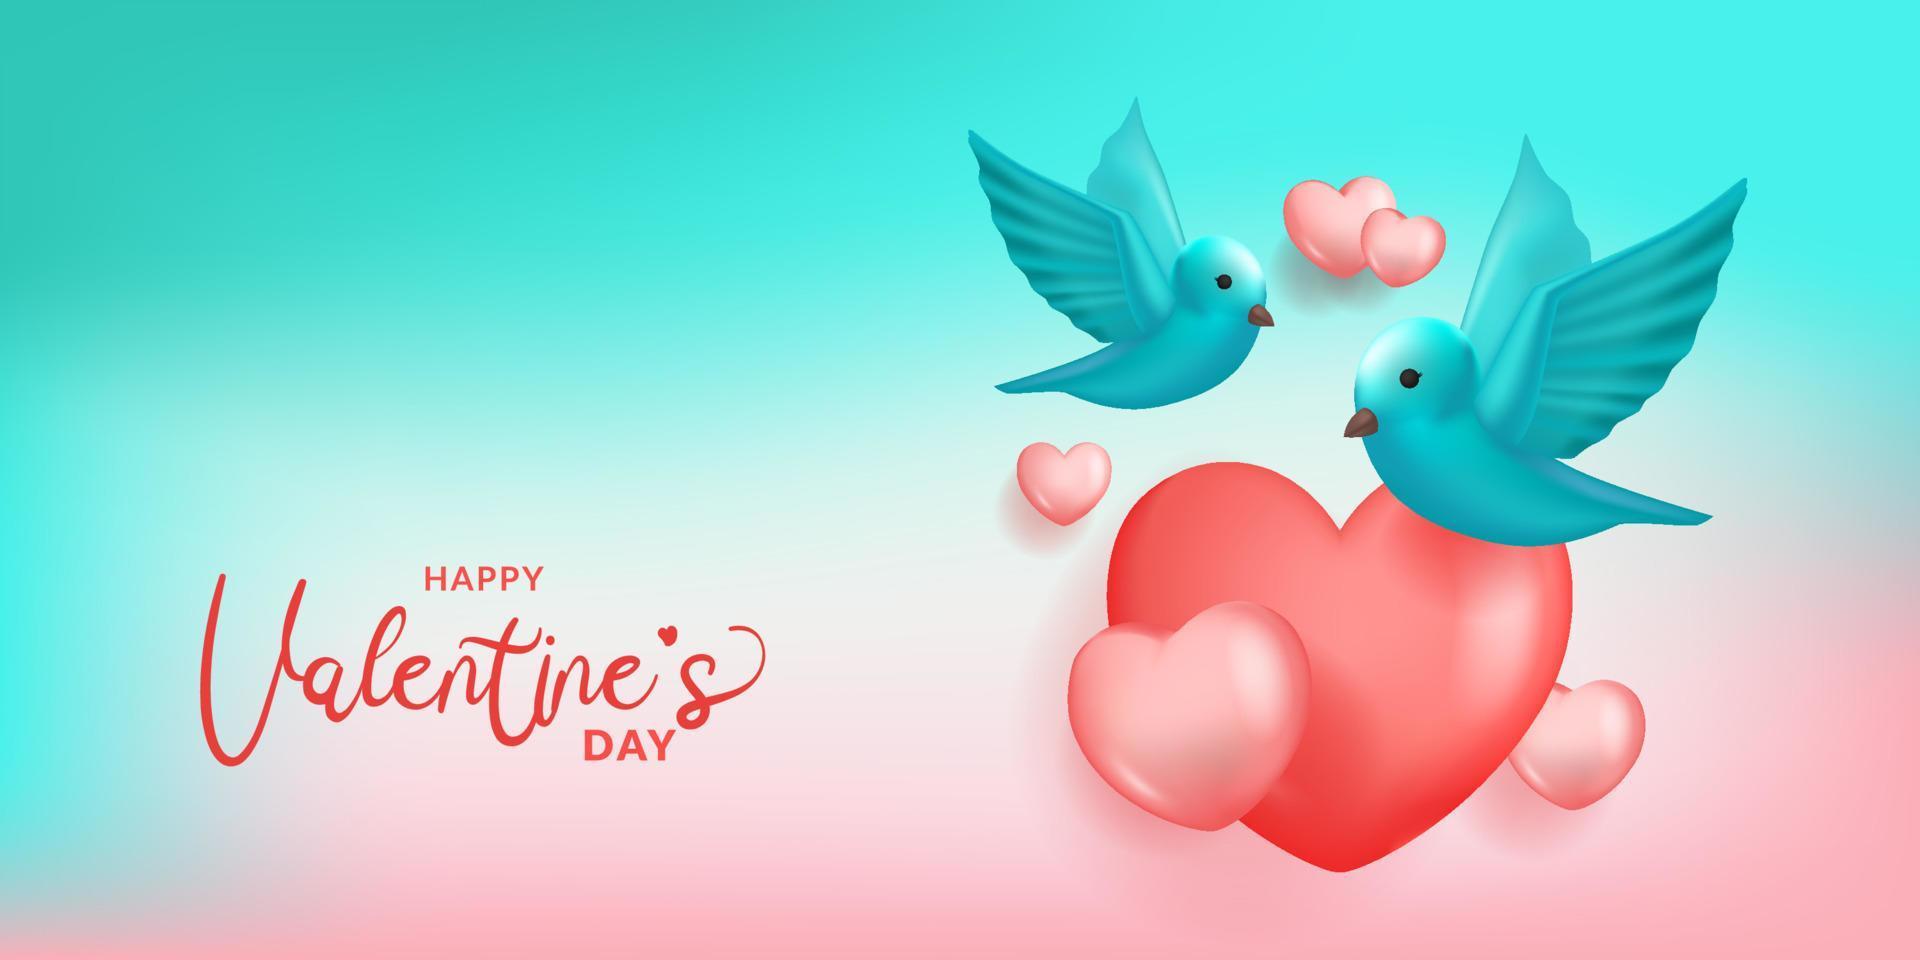 pájaro volando con forma de corazón decoración del día de san valentín fondo de cielo dulce vector